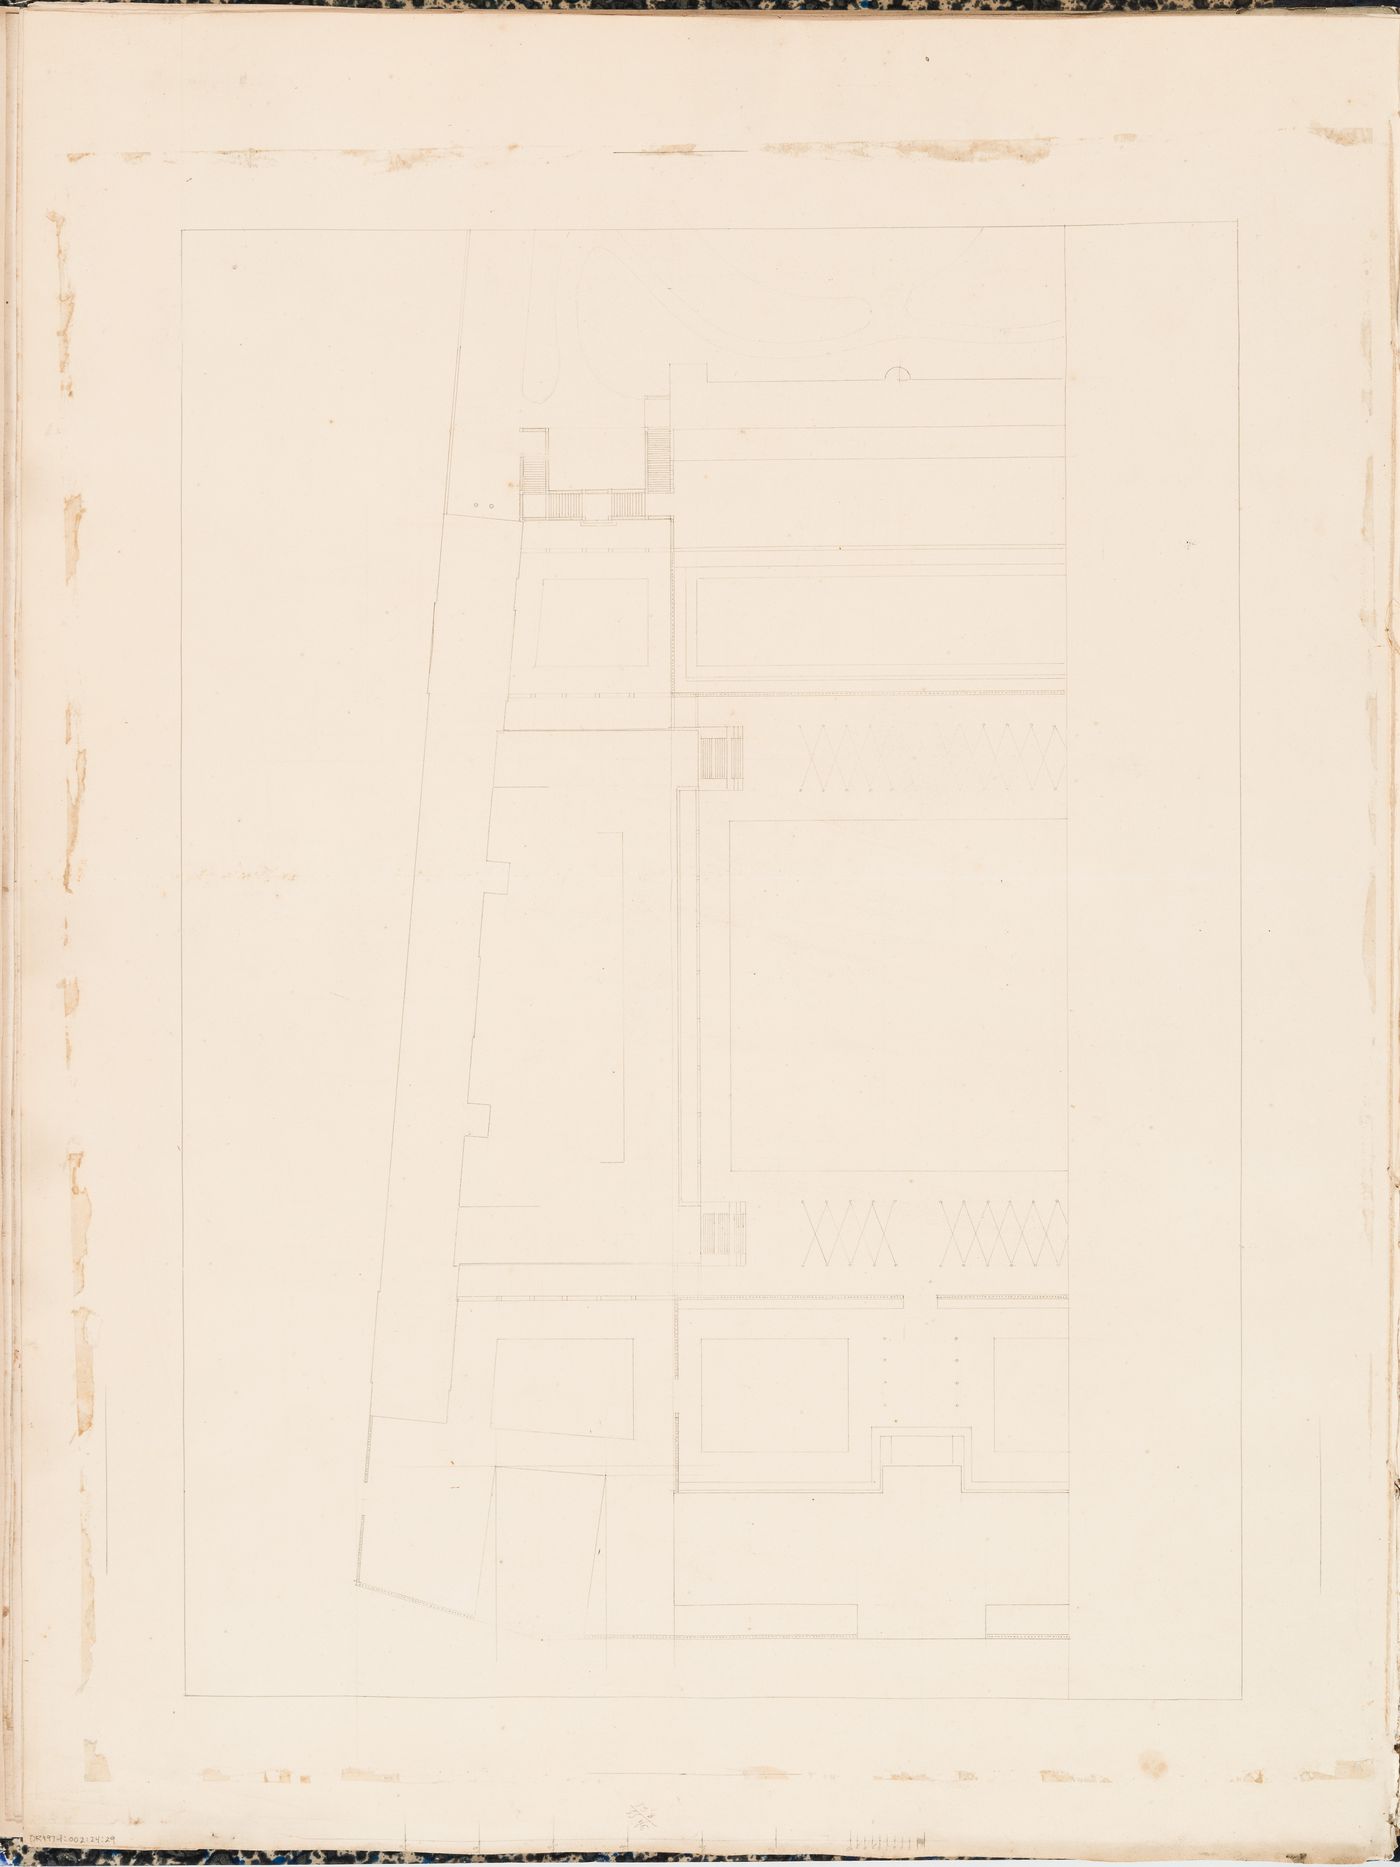 Project for a Galerie de zoologie, 1846: Plan